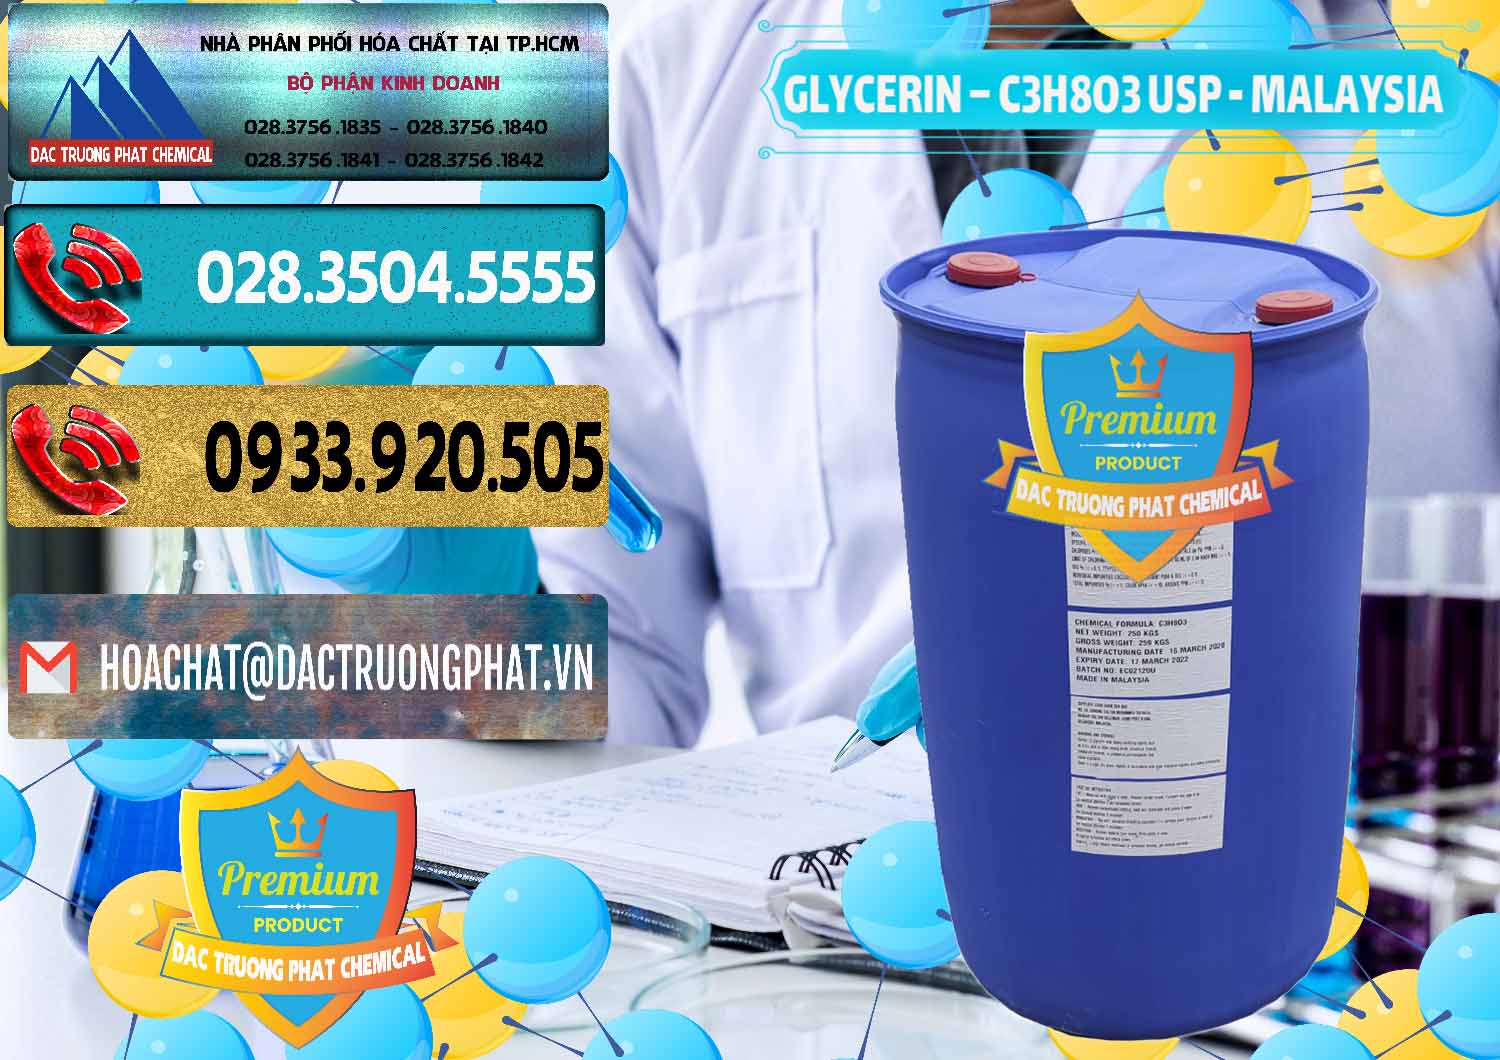 Kinh doanh _ bán Glycerin – C3H8O3 USP Malaysia - 0233 - Công ty chuyên cung ứng ( phân phối ) hóa chất tại TP.HCM - hoachatdetnhuom.com